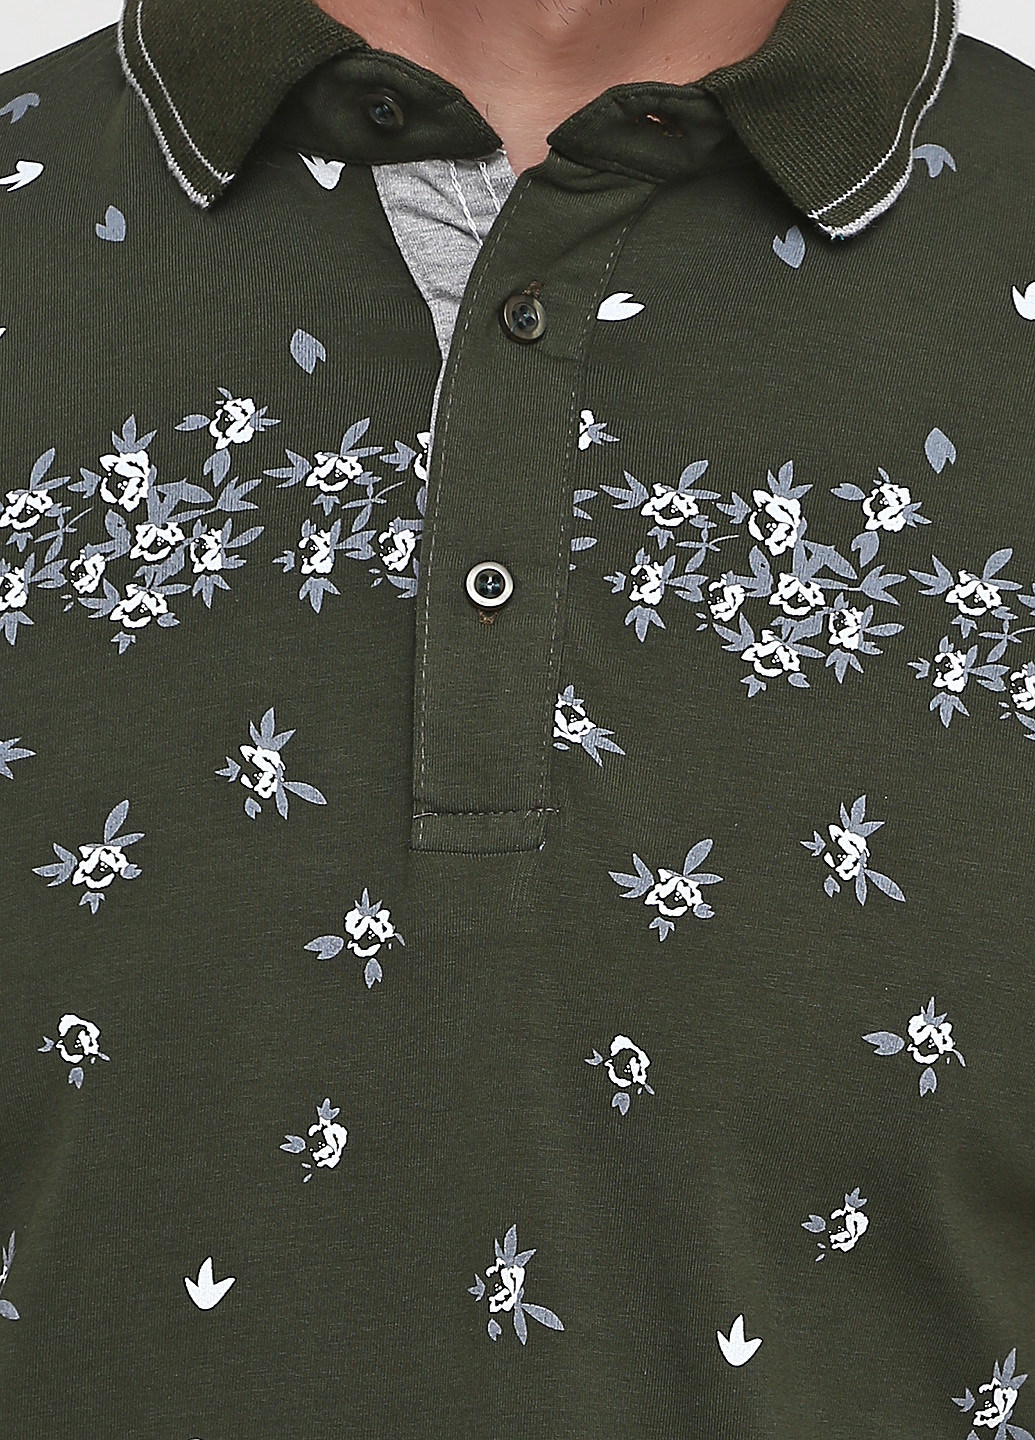 Оливковая (хаки) футболка-поло для мужчин Golf с цветочным принтом